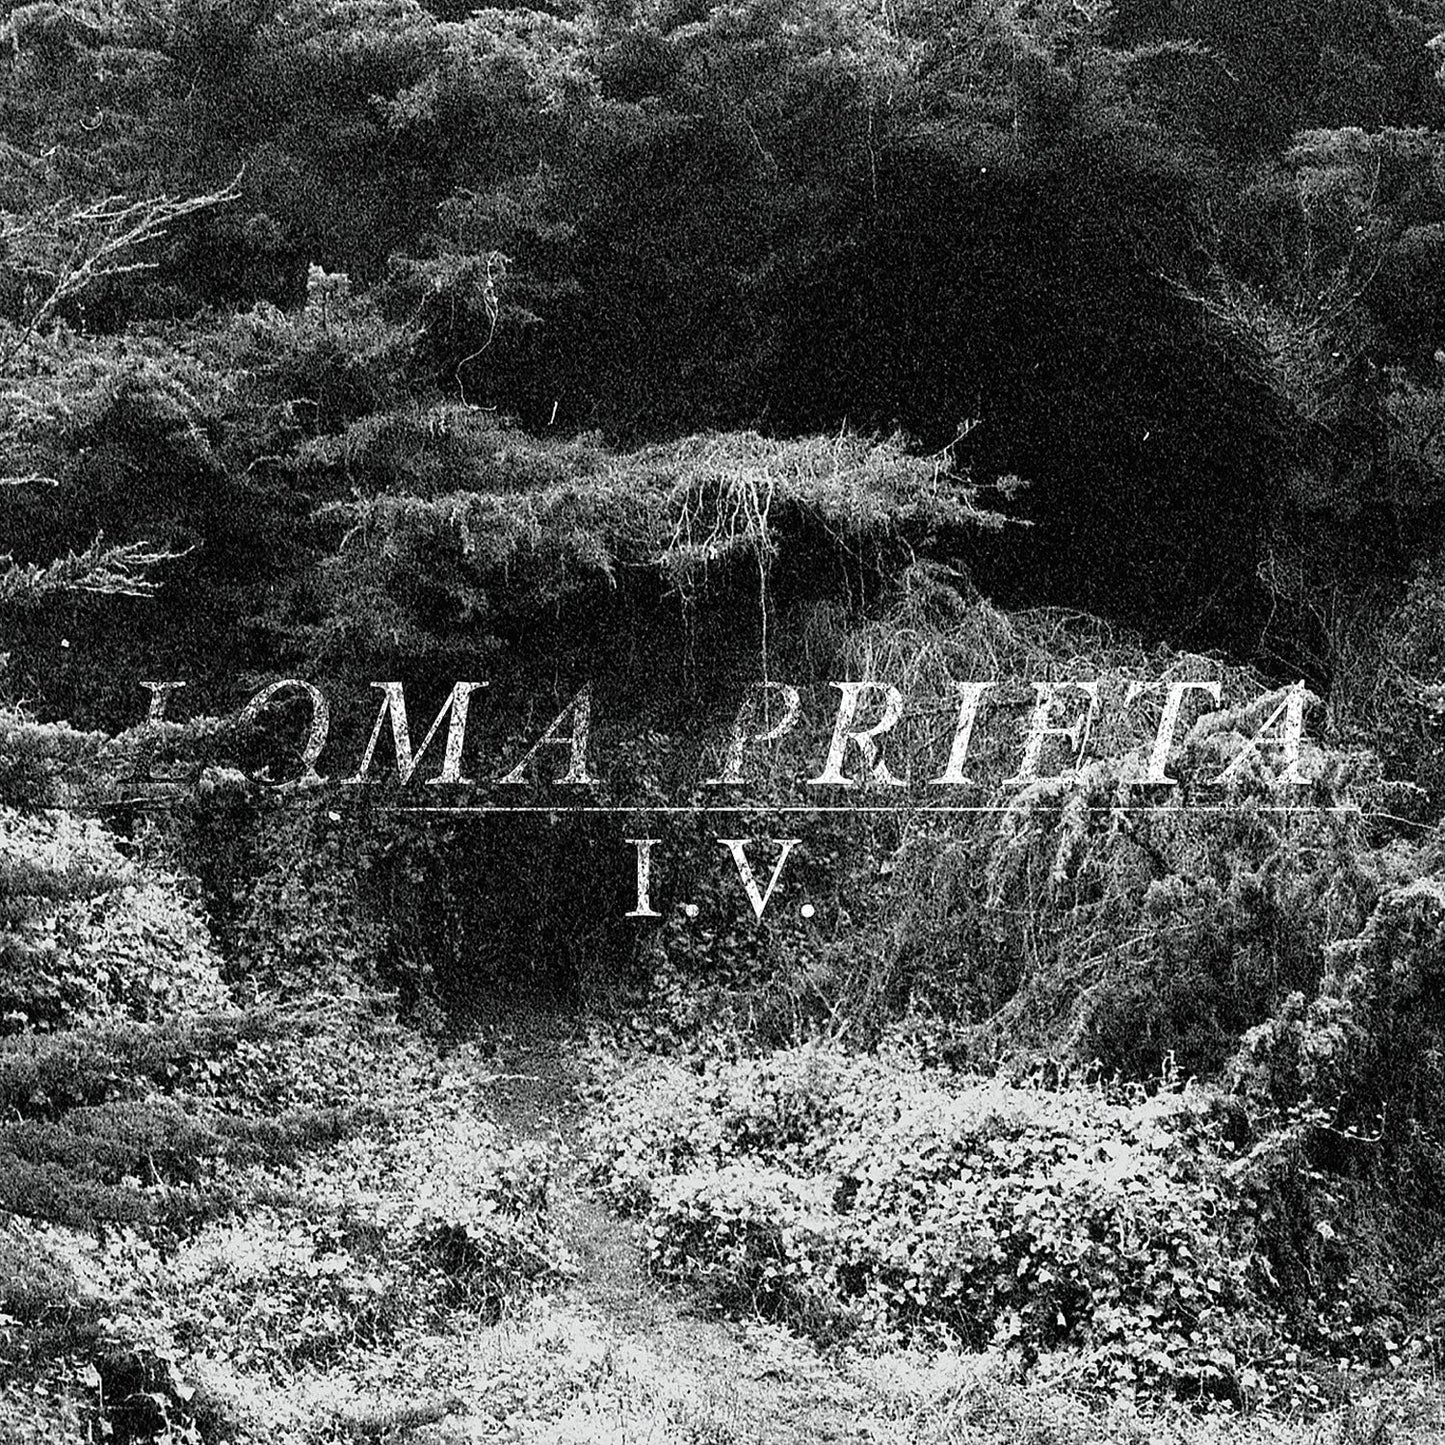 Loma Prieta/I.V. [LP]